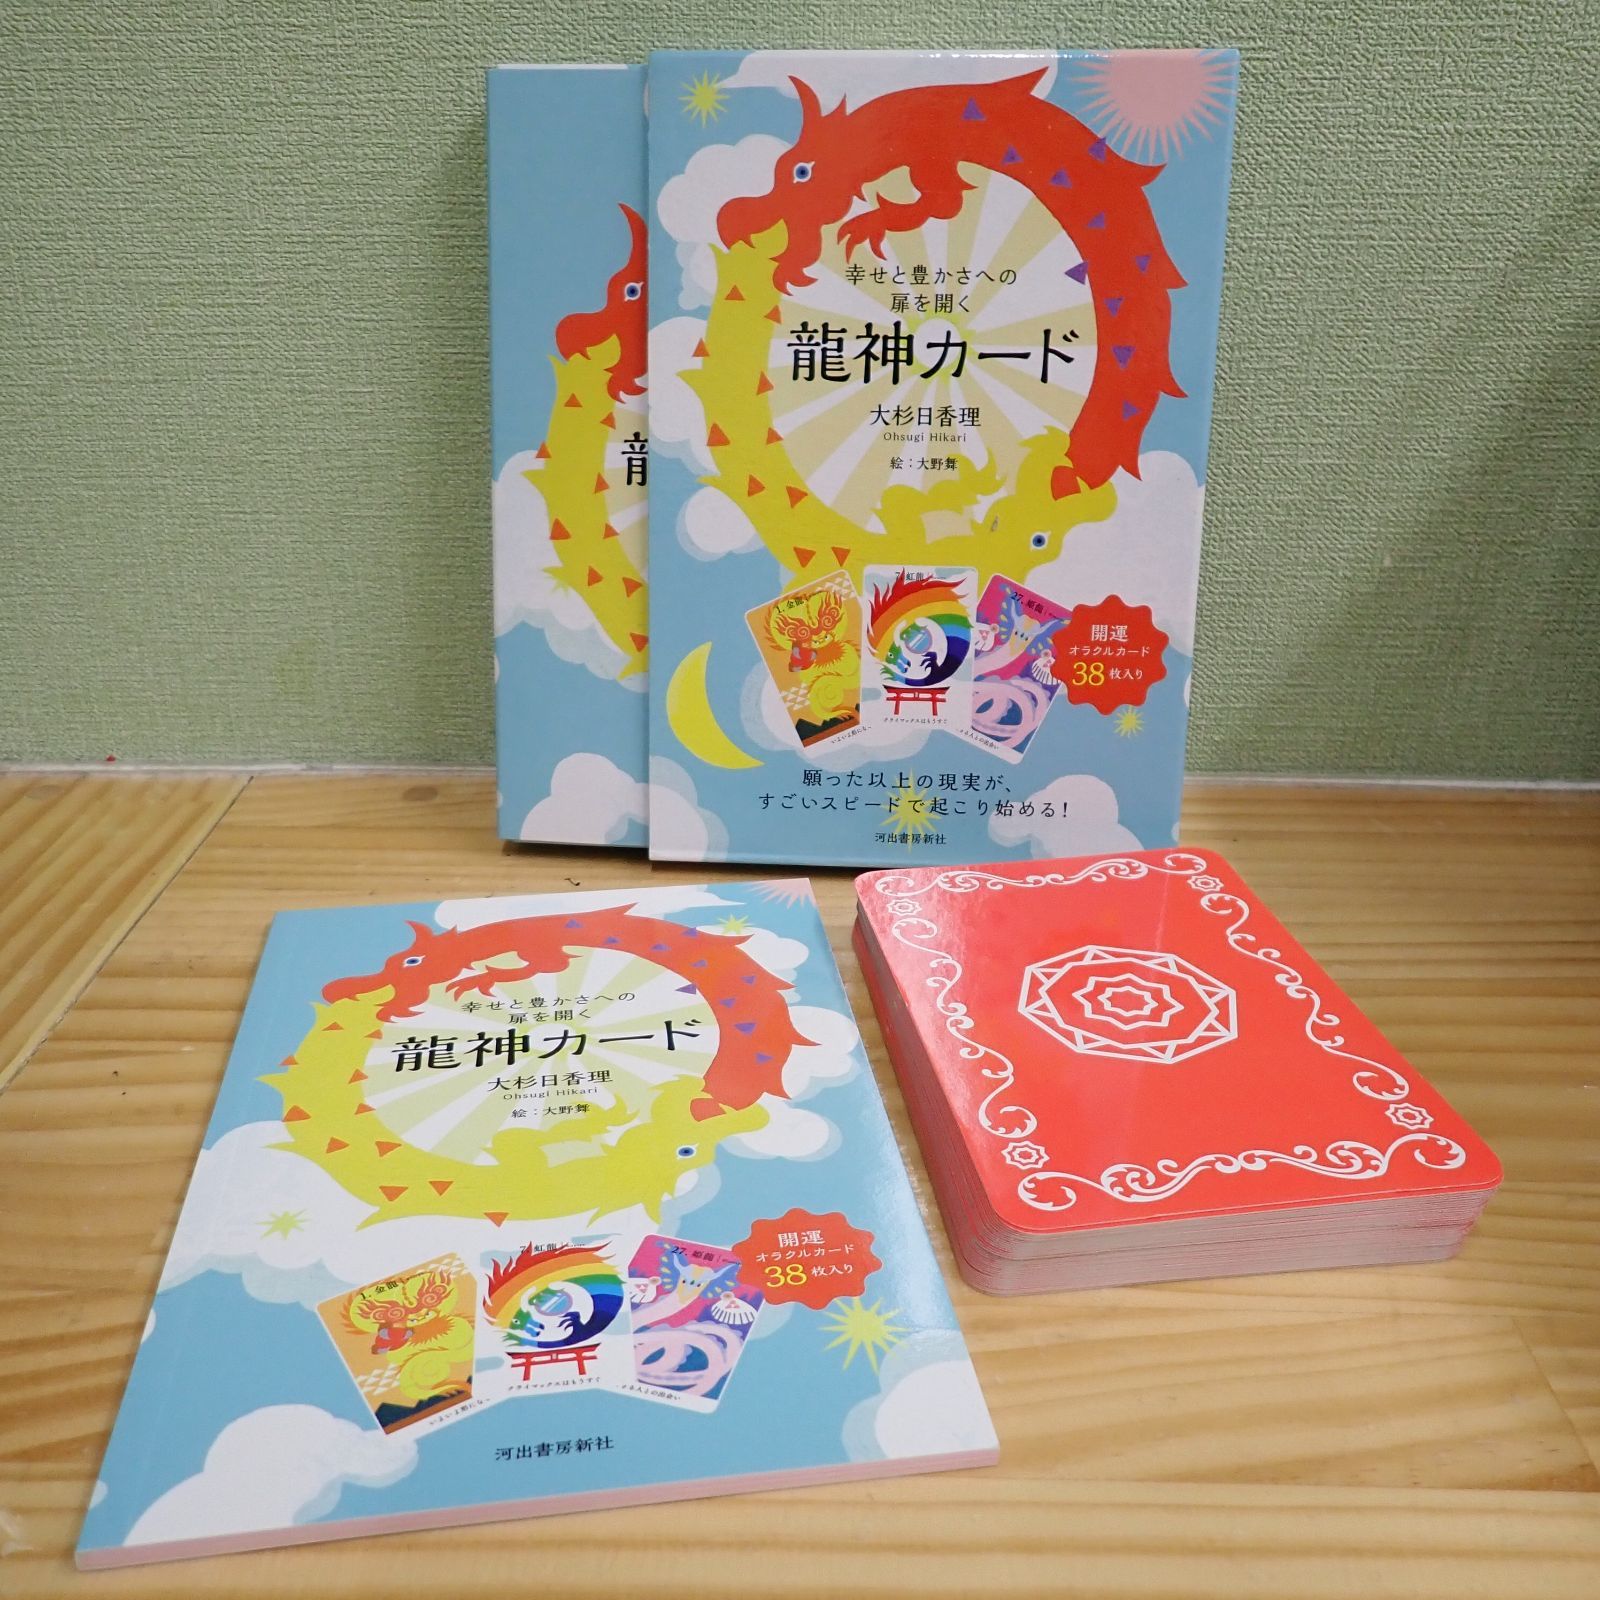 オラクルカード☆ 「龍神カード」☆ 幸せと豊かさへの扉を開く 龍神